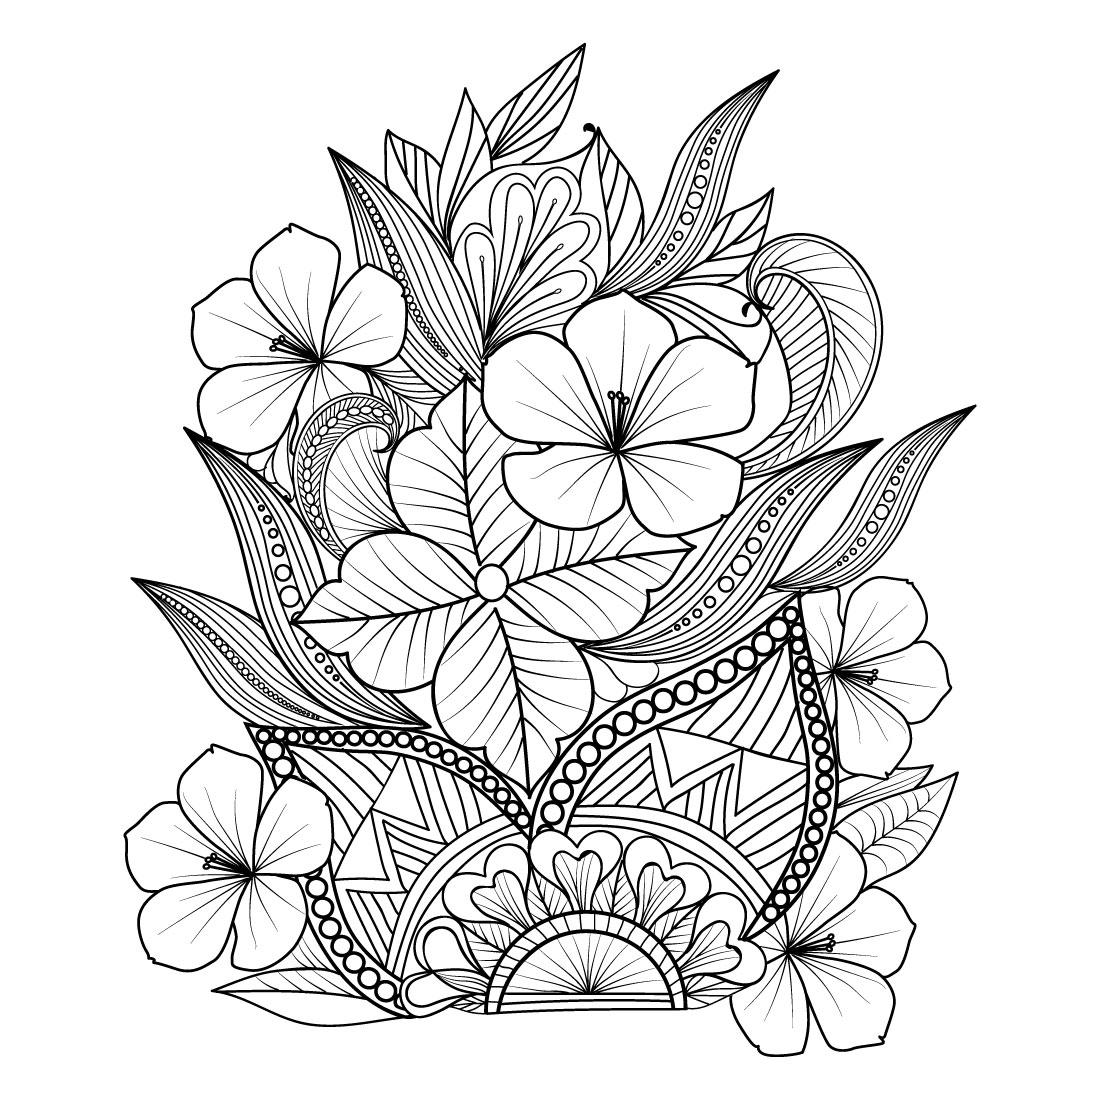 New Creation Digital Flower All Colour Stock Illustration 1497616154 |  Shutterstock | Botanical flower art, Flower pattern drawing, Flower art  images